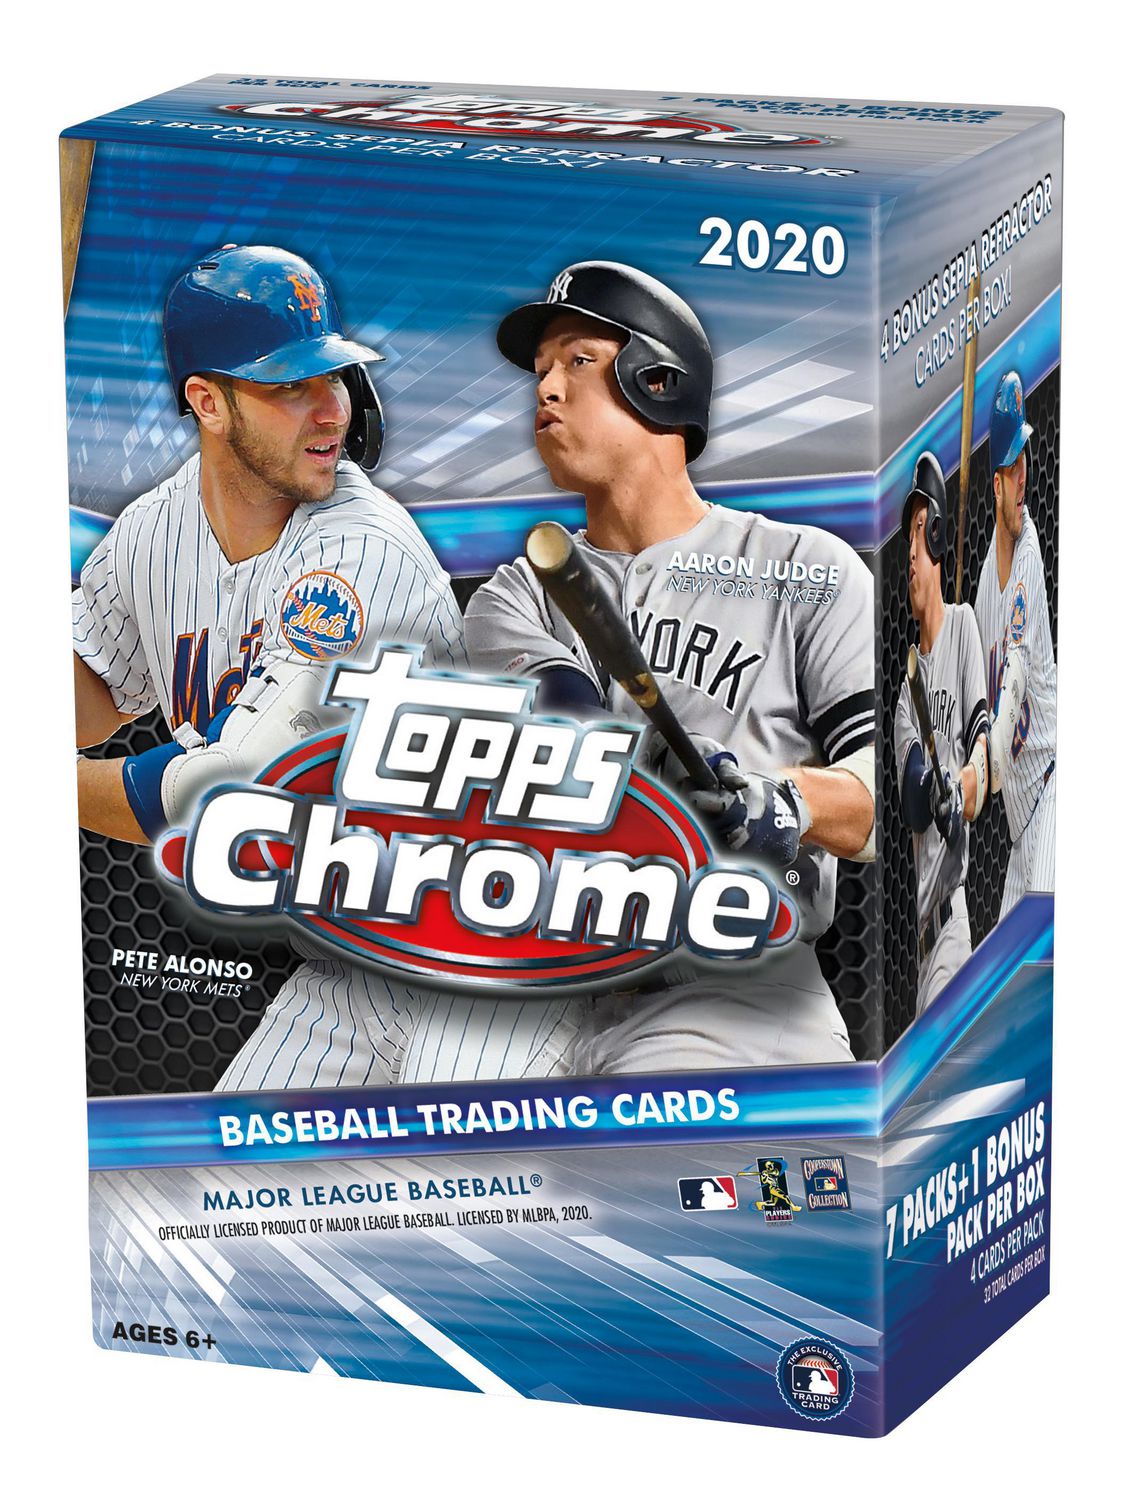 2020 Topps Chrome MLB Baseball Trading Cards Blaster Box 28 Cards